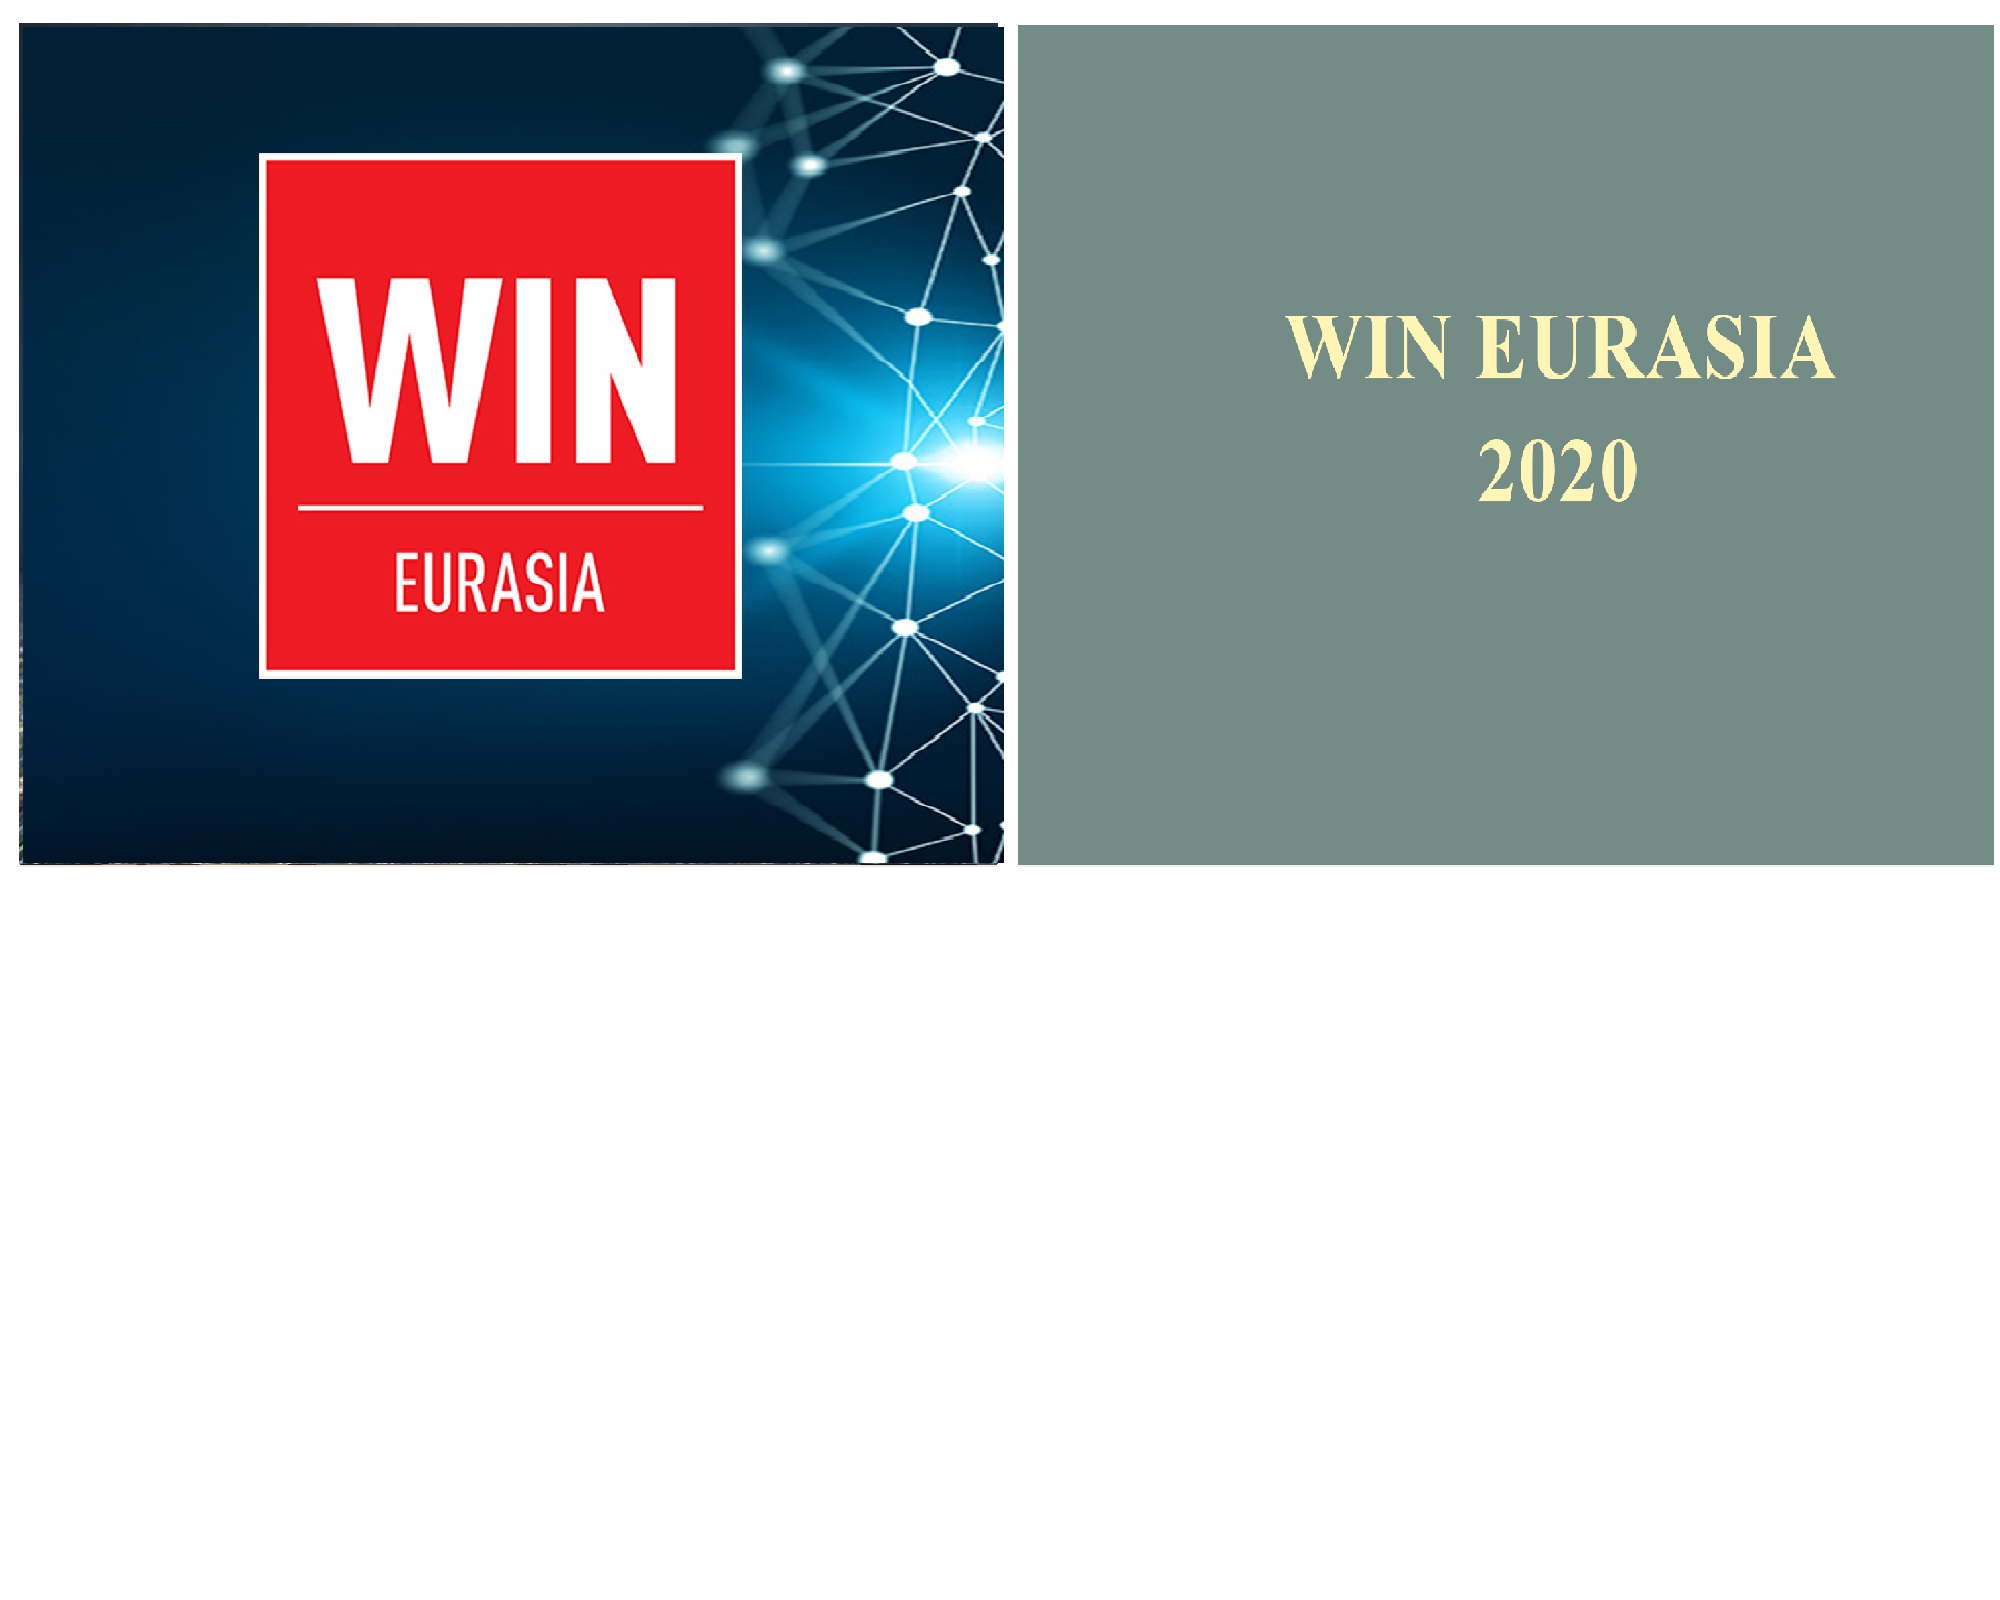 win eurasia 2020